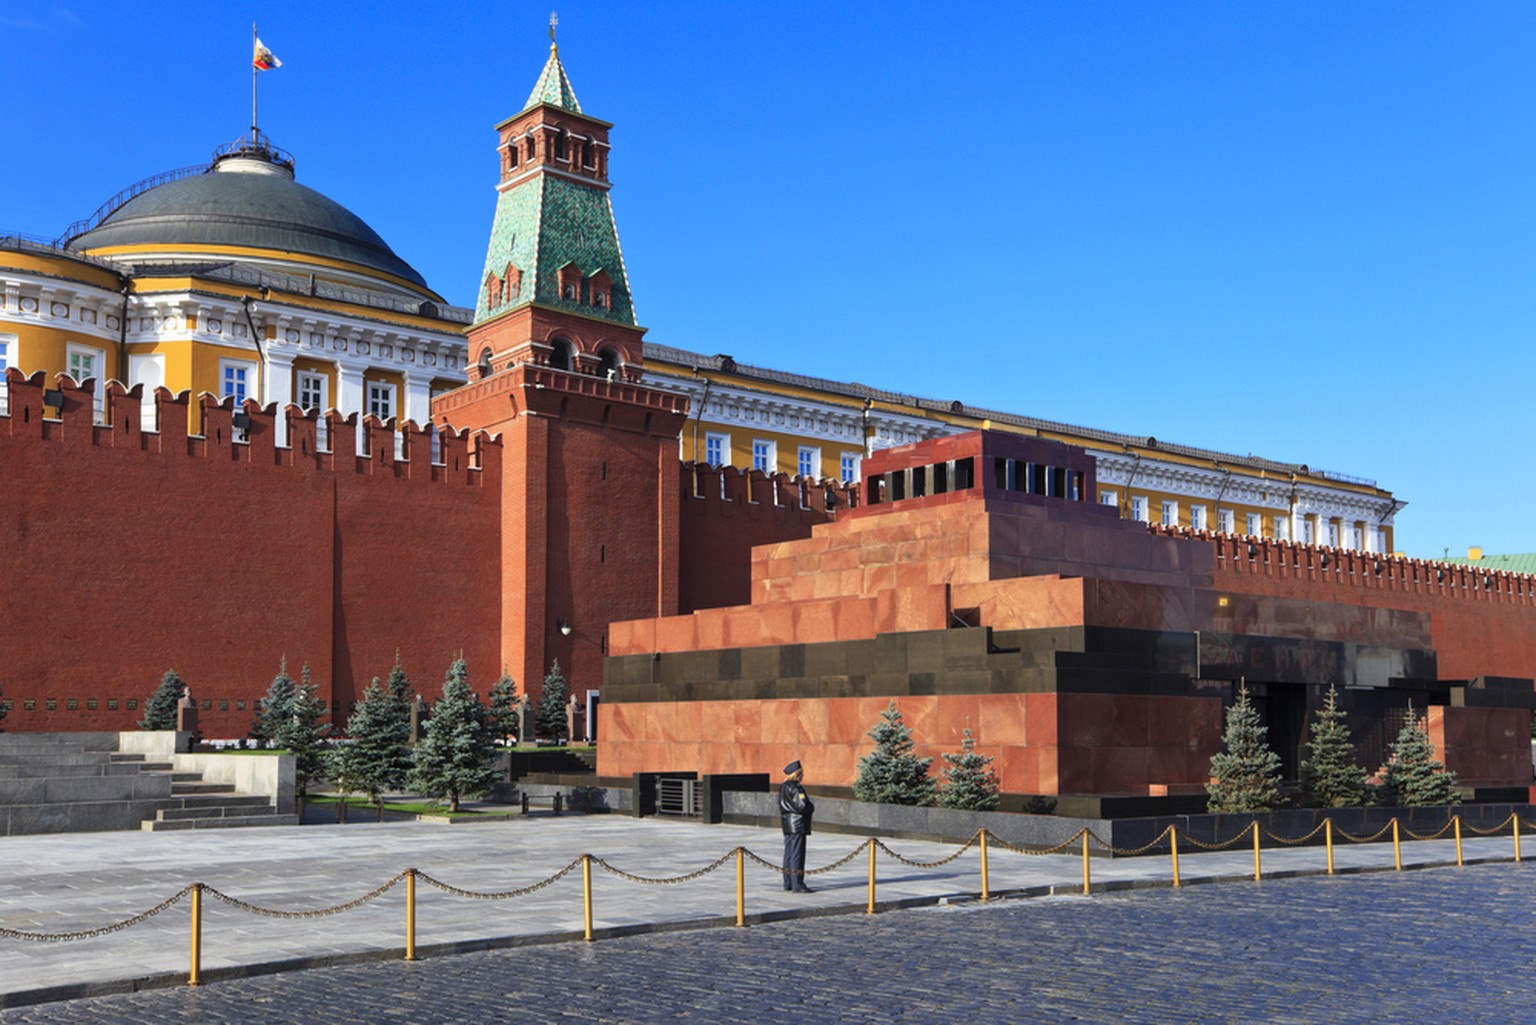 Das Lenin-Mausoleum, wie es bis heute besteht: Aus feinem Labradorstein und dunkelrotem Granit. Im Hintergrund ist der Senatspalast zu sehen.